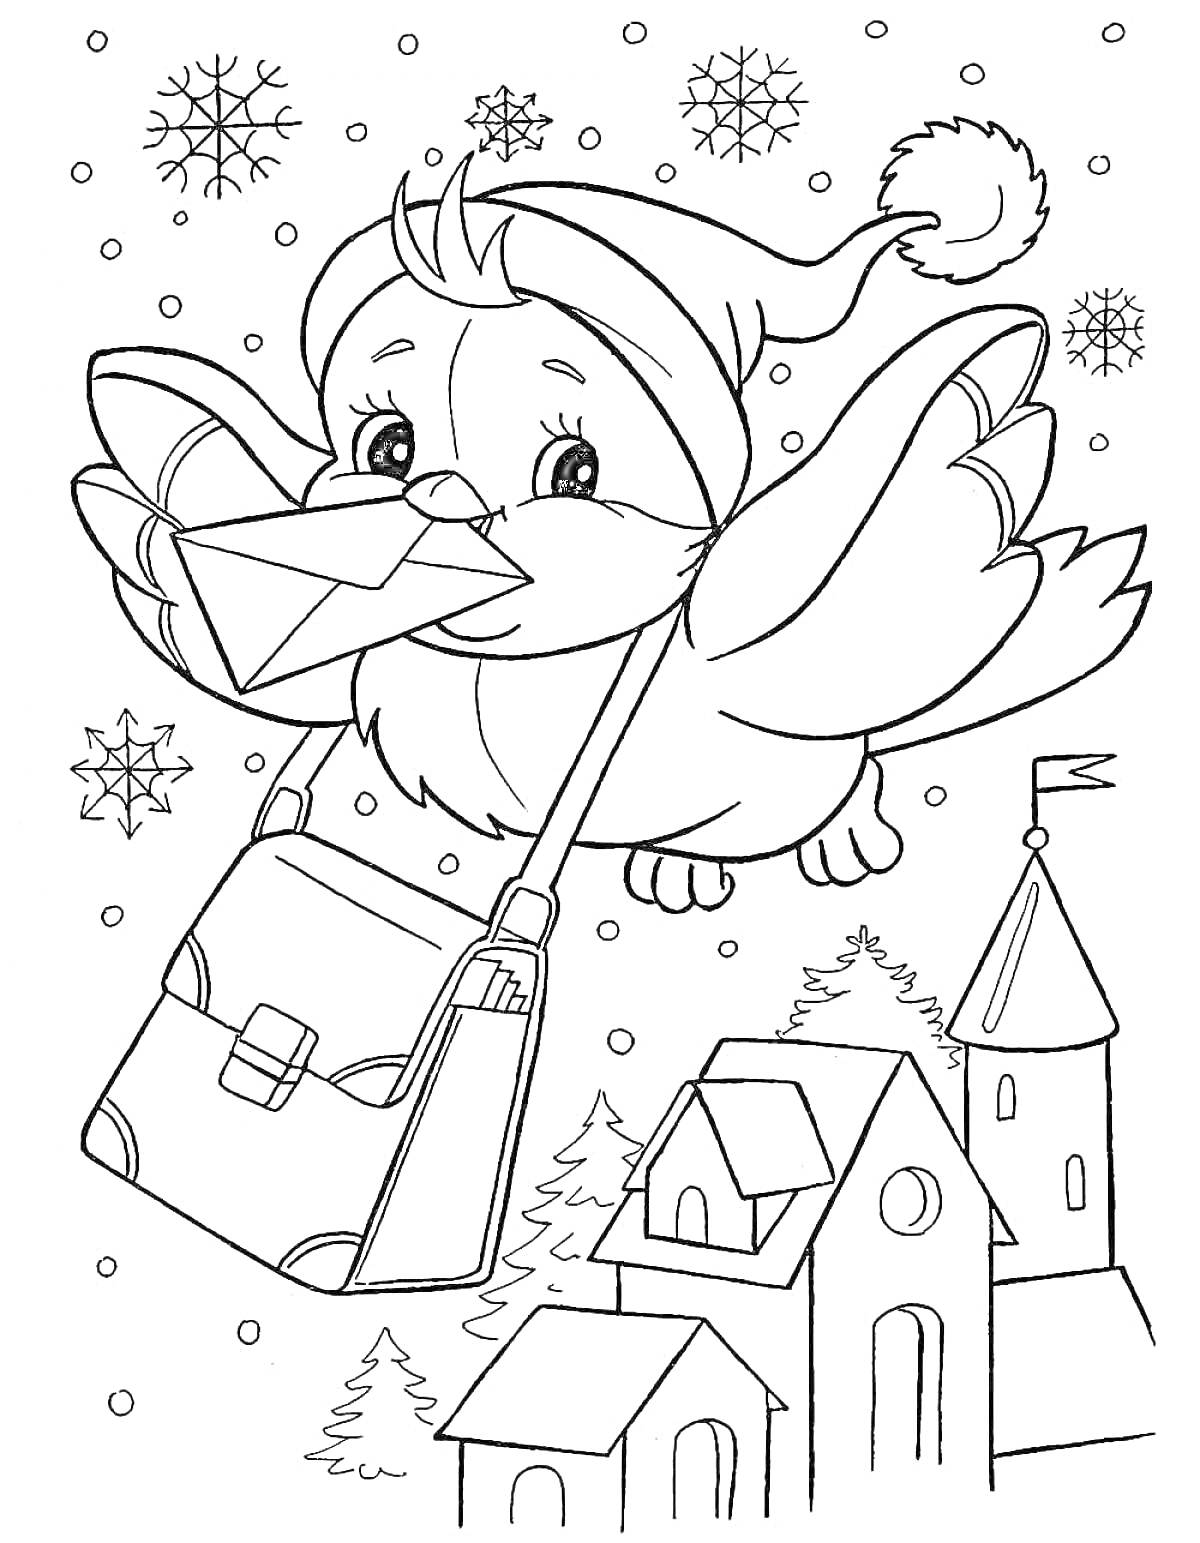 Птица-почтальон в зимней шапке с письмом и сумкой, летящая над домами и деревьями с падающими снежинками